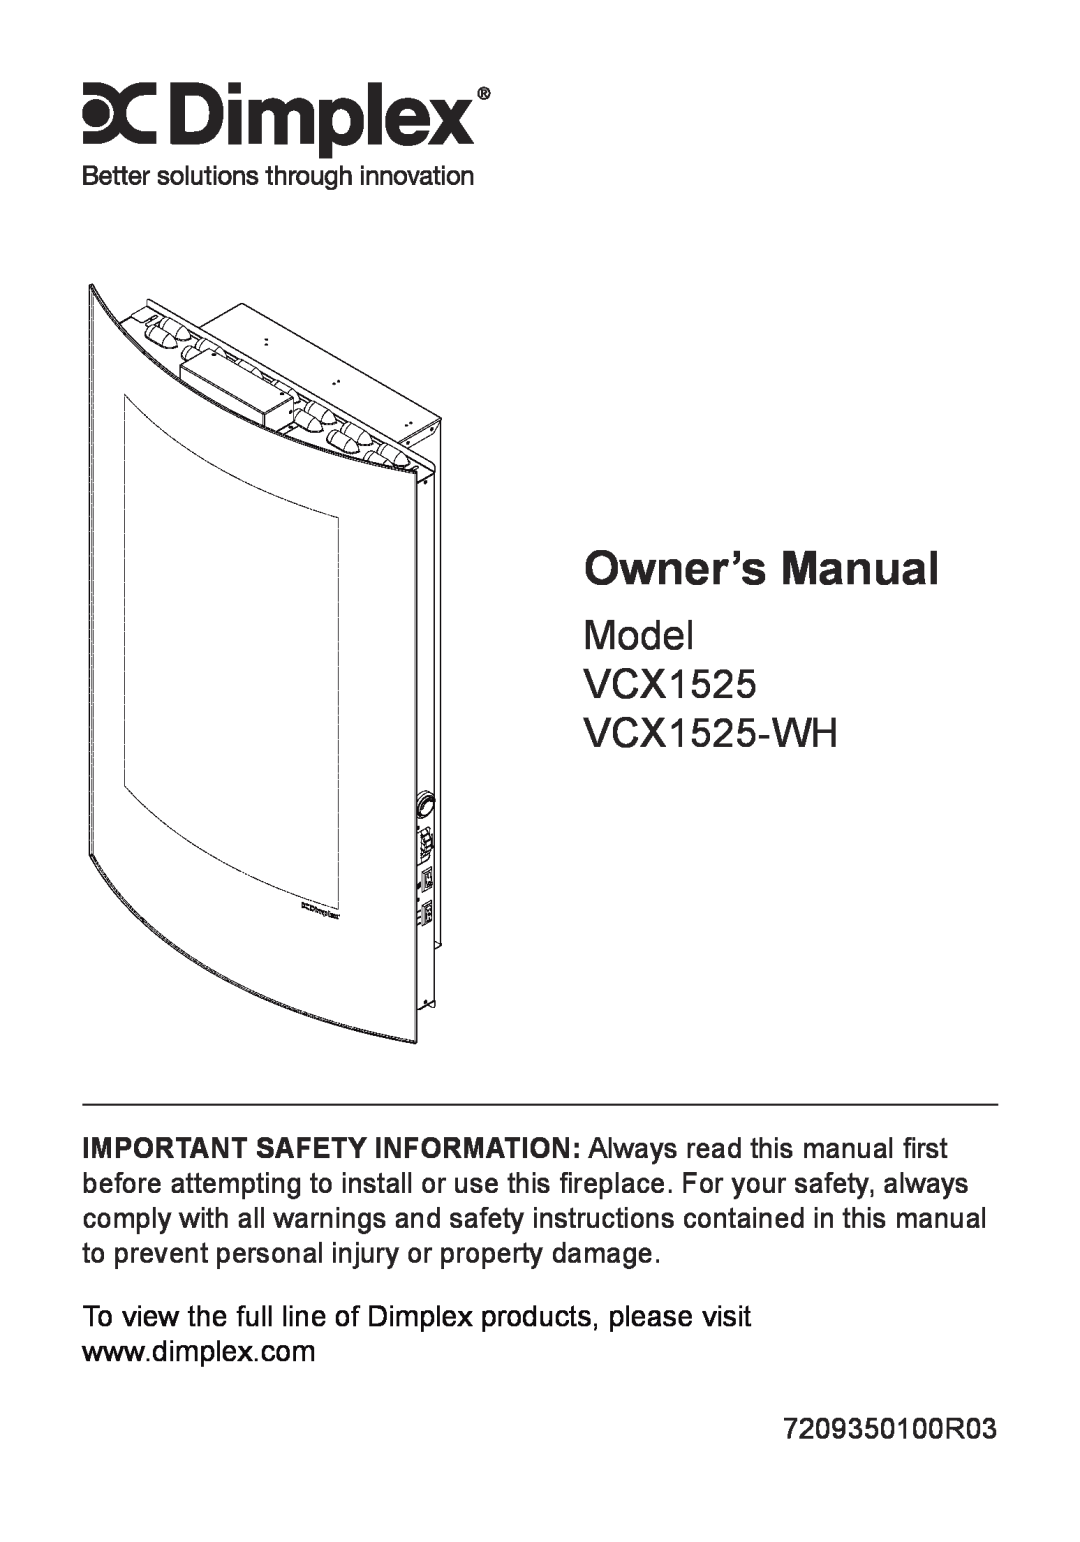 Dimplex owner manual Model VCX1525 VCX1525-WH 